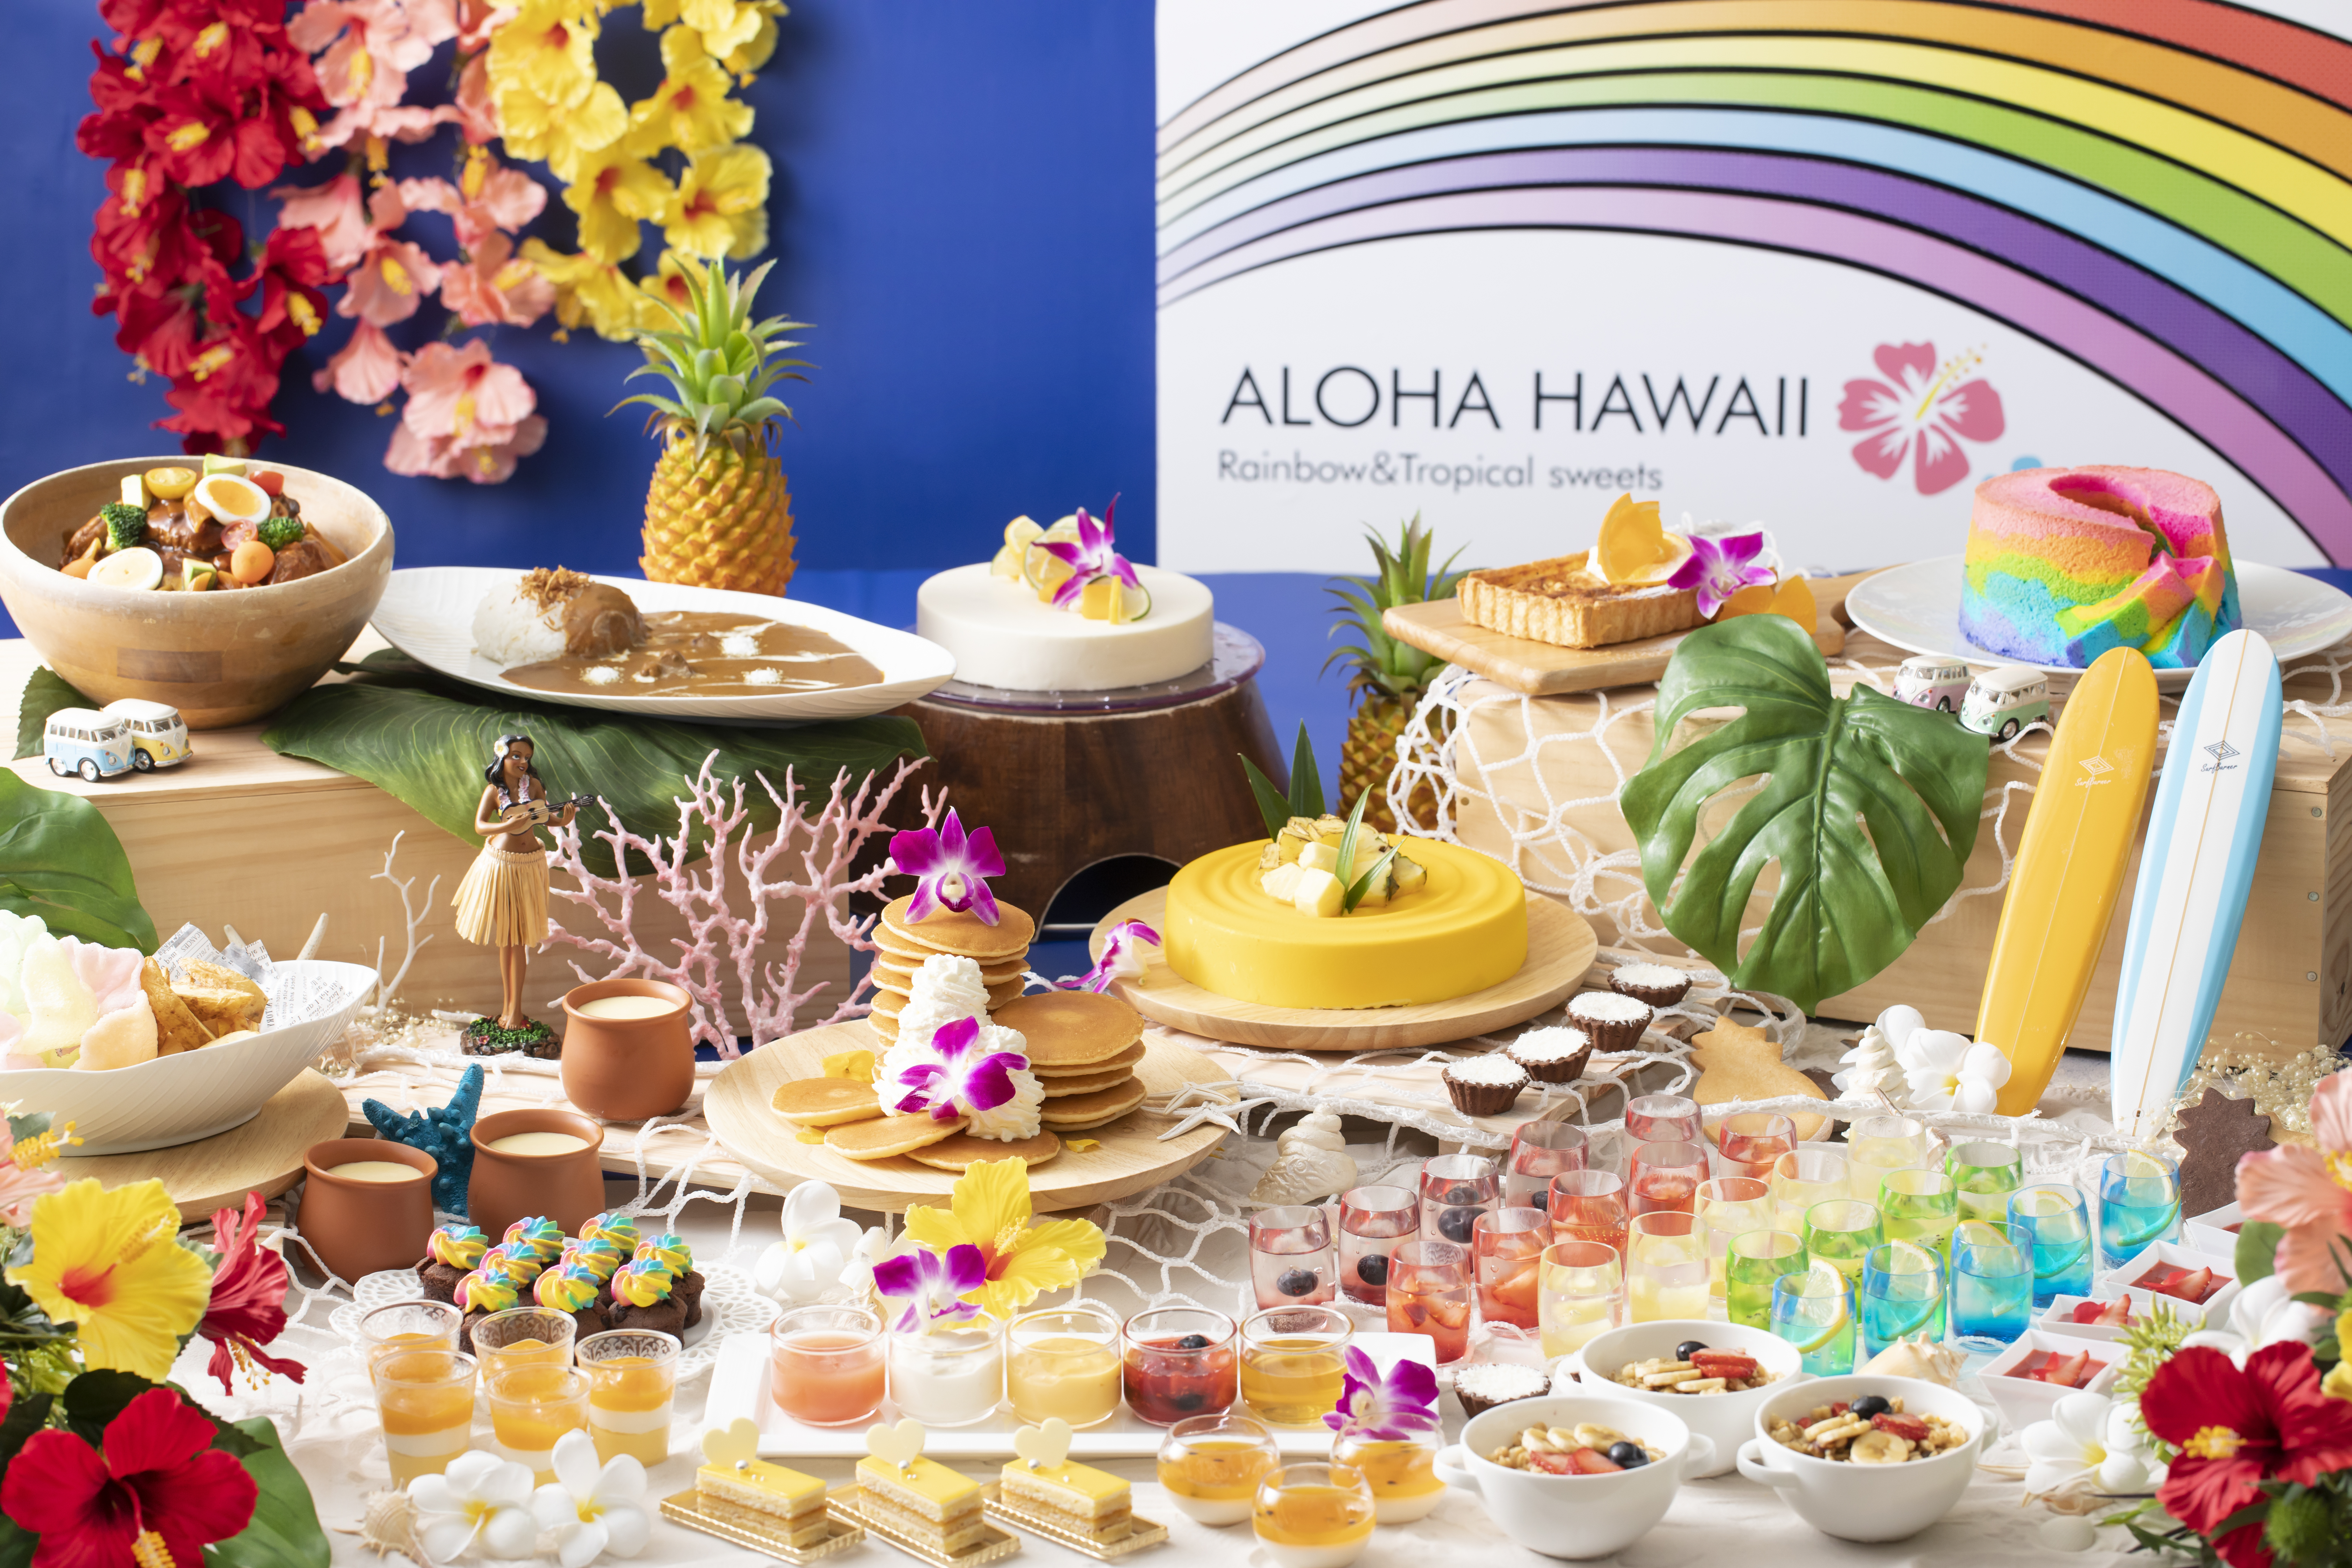 ハワイ旅行気分を満喫 パンケーキなどが食べ放題 ハワイアン レインボーパラダイス スイーツブッフェ 開催 Newscast